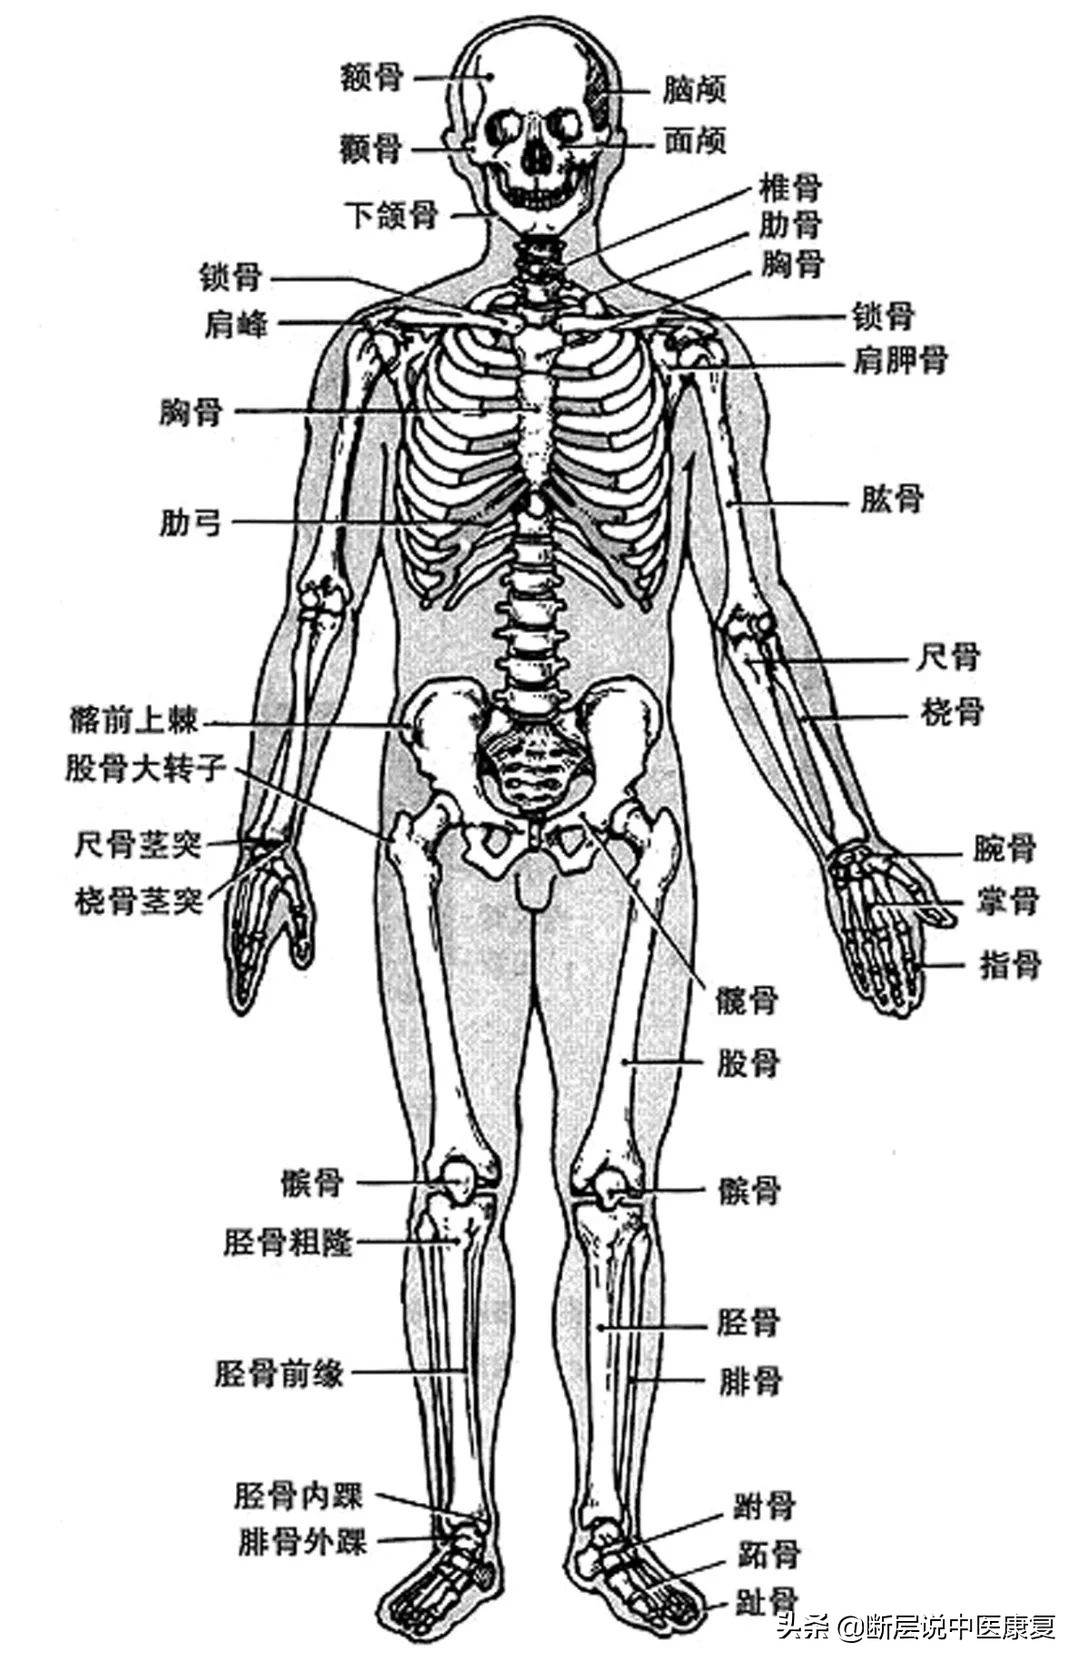 人体骨骼图人体骨骼结构图人体骨骼解剖图人体骨骼结构图正面观